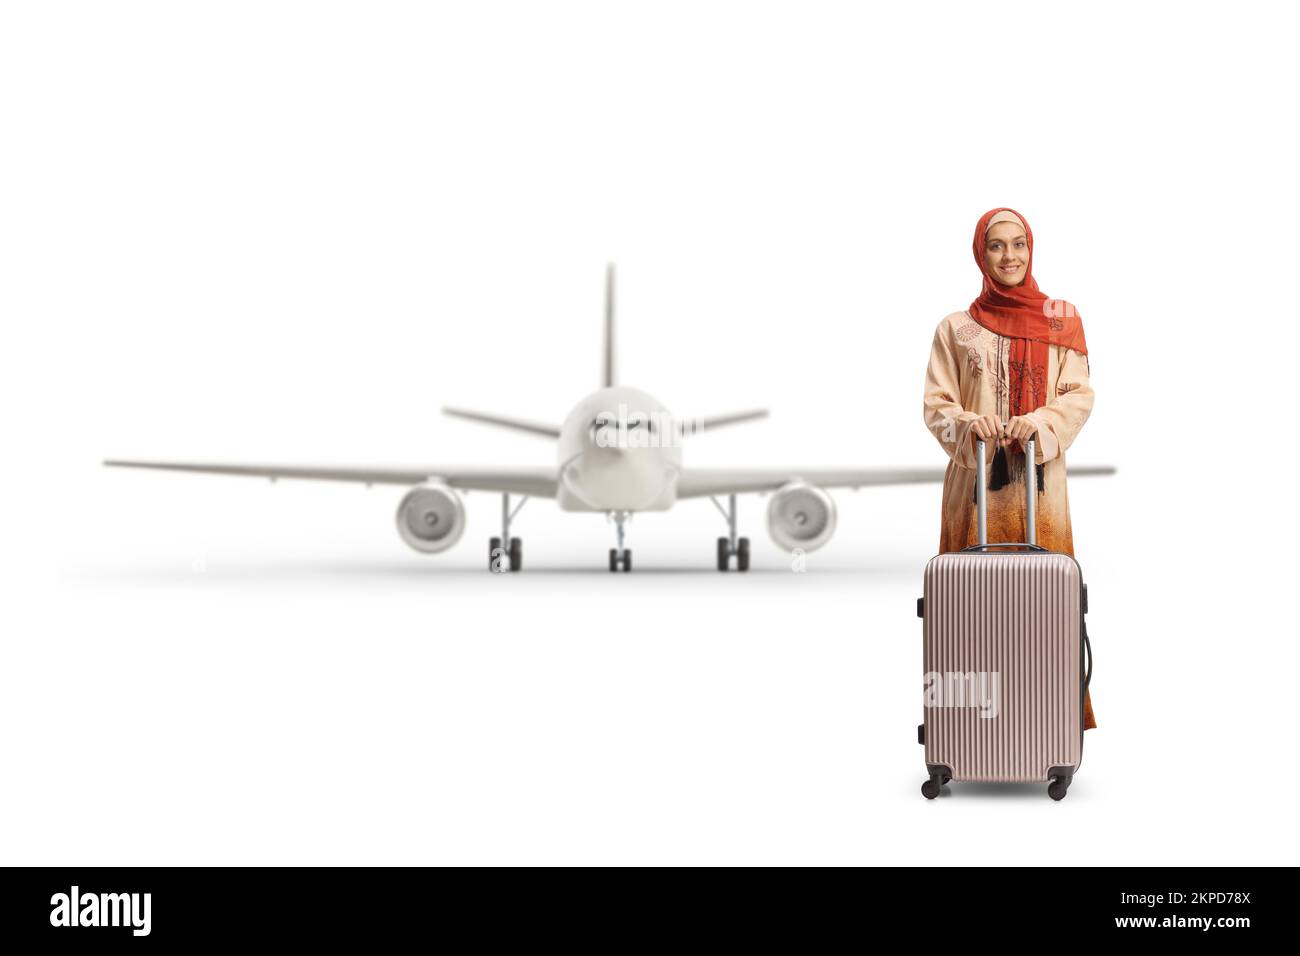 Giovane donna in abiti etnici e hijab con una valigia posta di fronte ad un aereo isolato su sfondo bianco Foto Stock